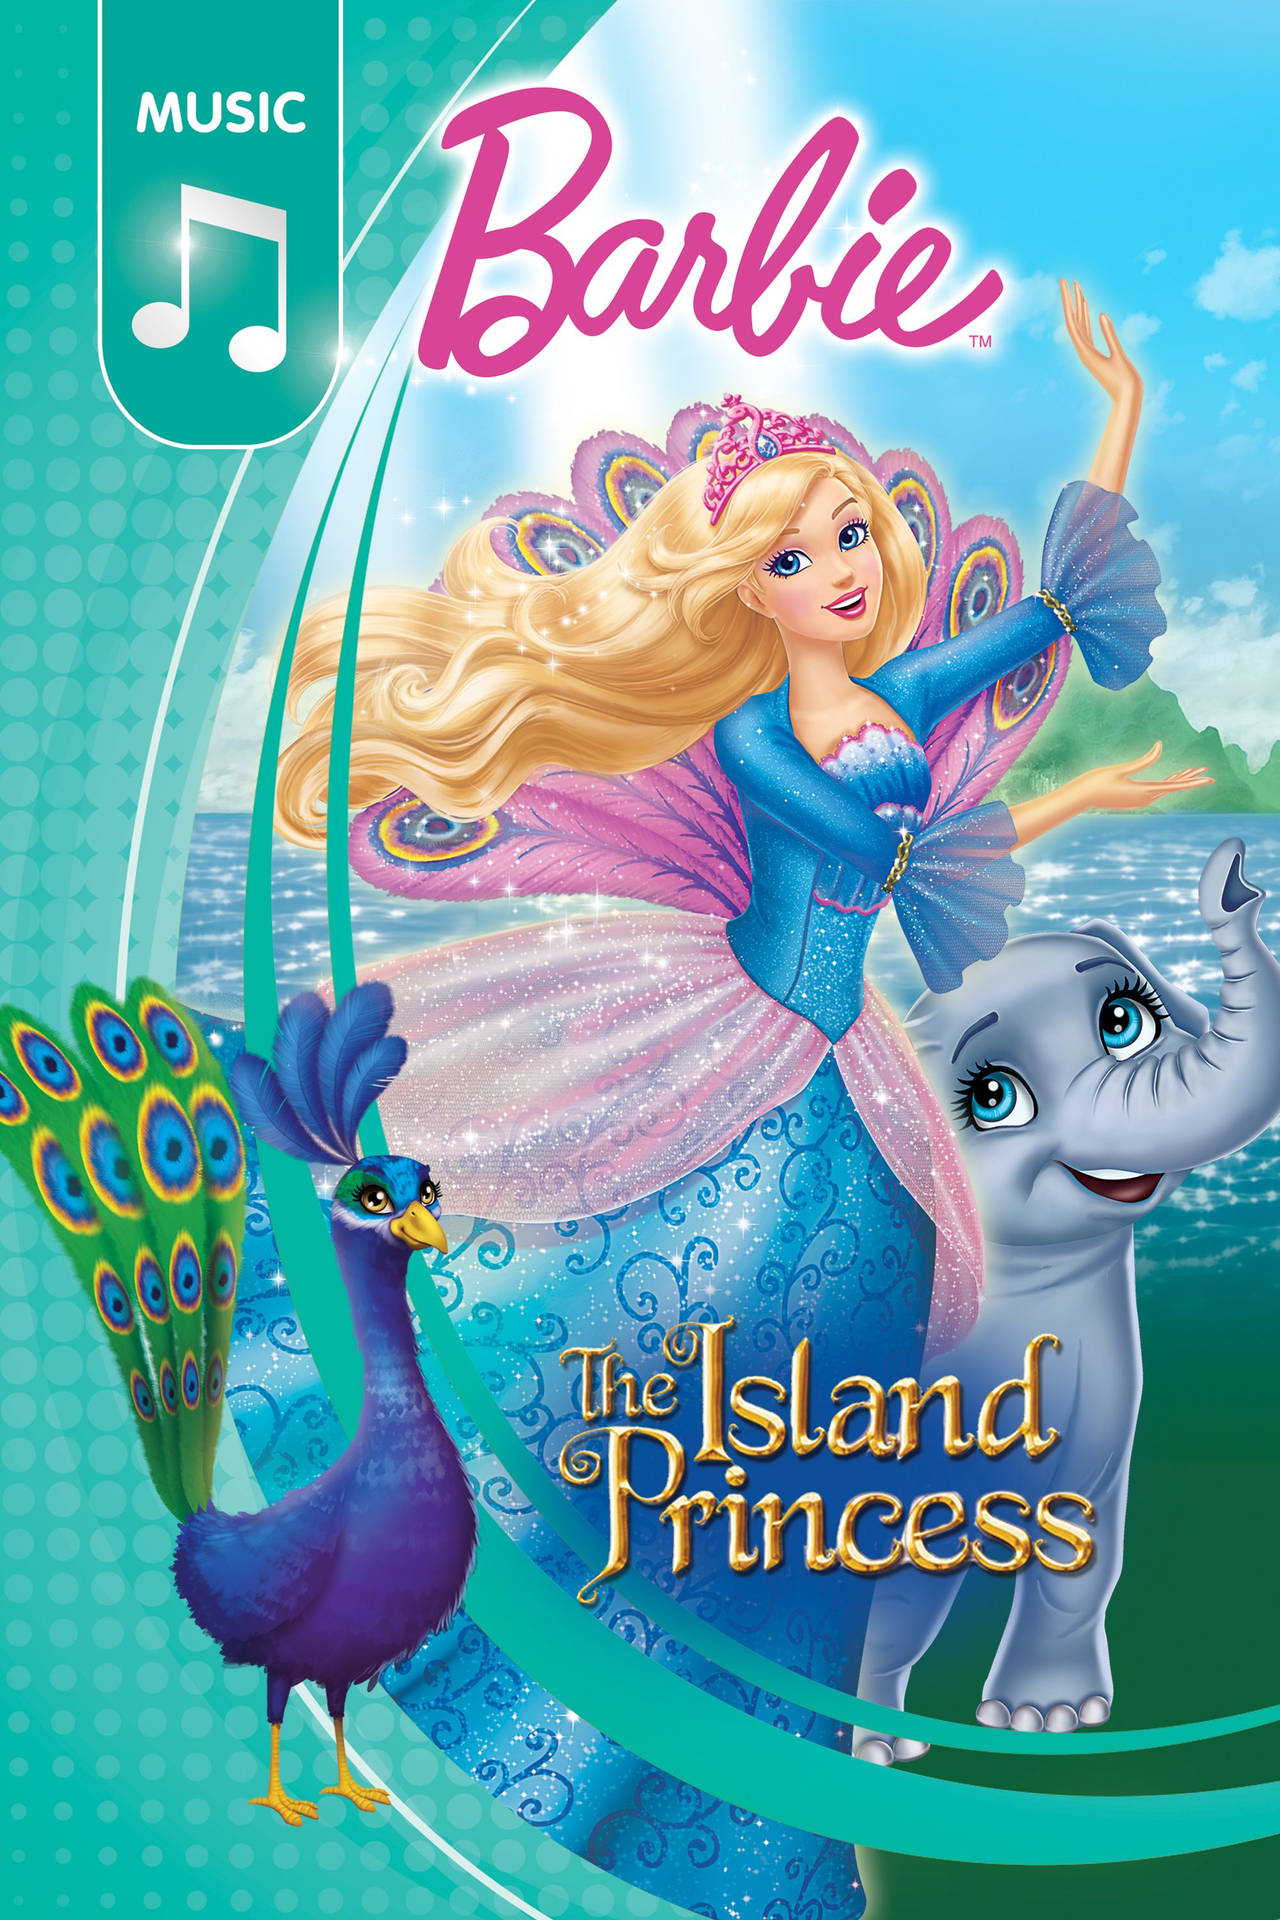 Barbie Princess The Island Princess Cover Wallpaper